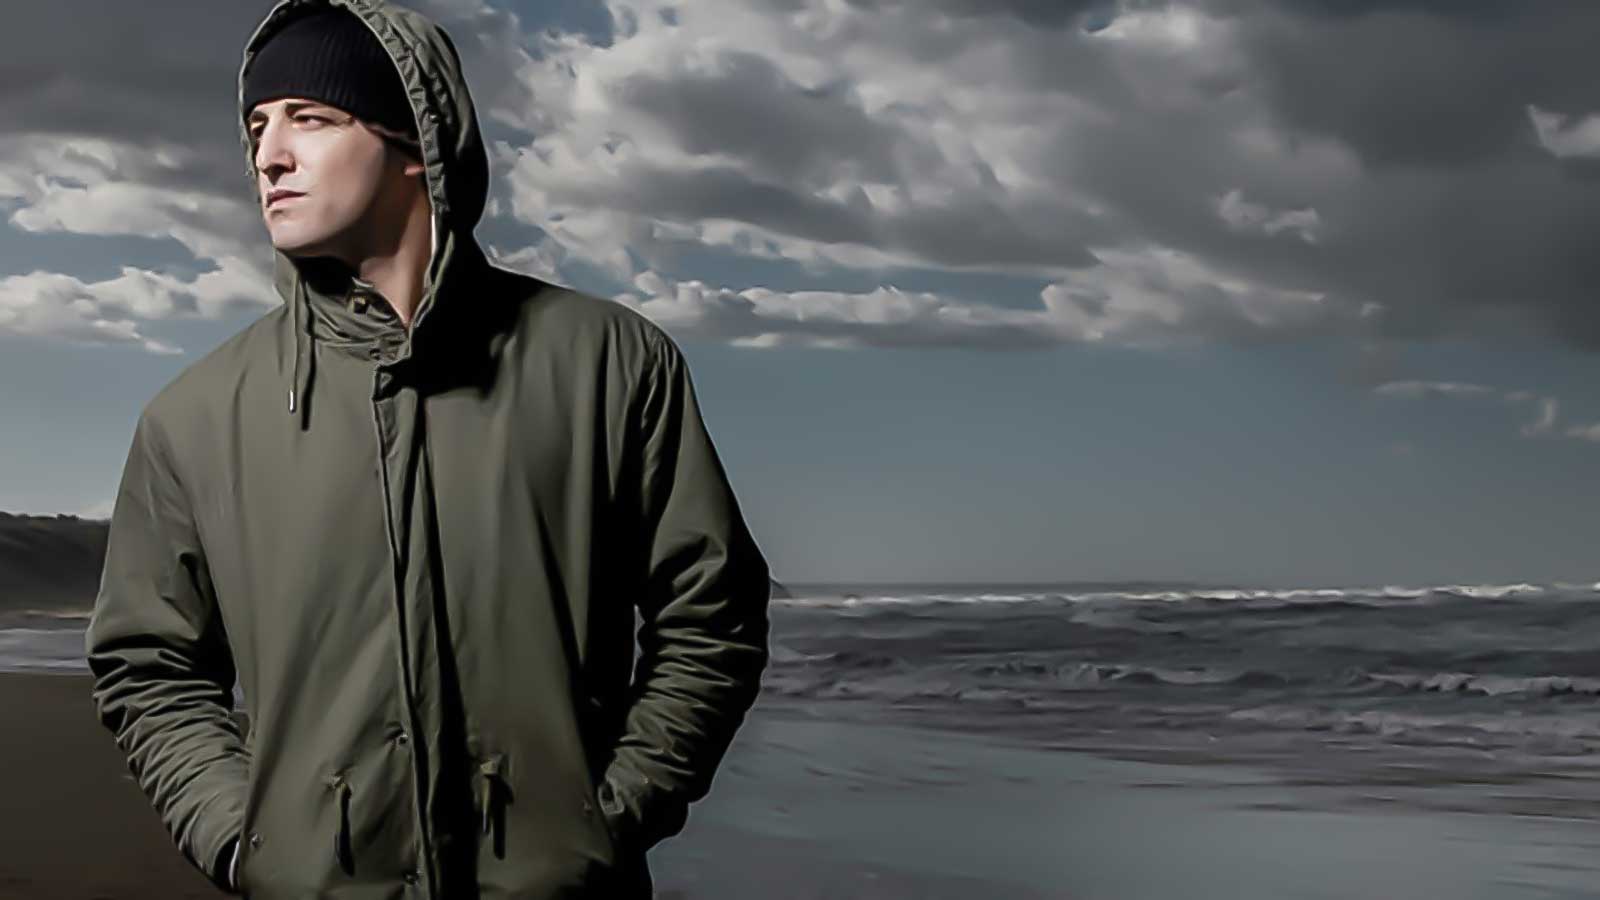 Un'immagine di Luca Dirisio tratta dalla copertina del suo nuovo singolo